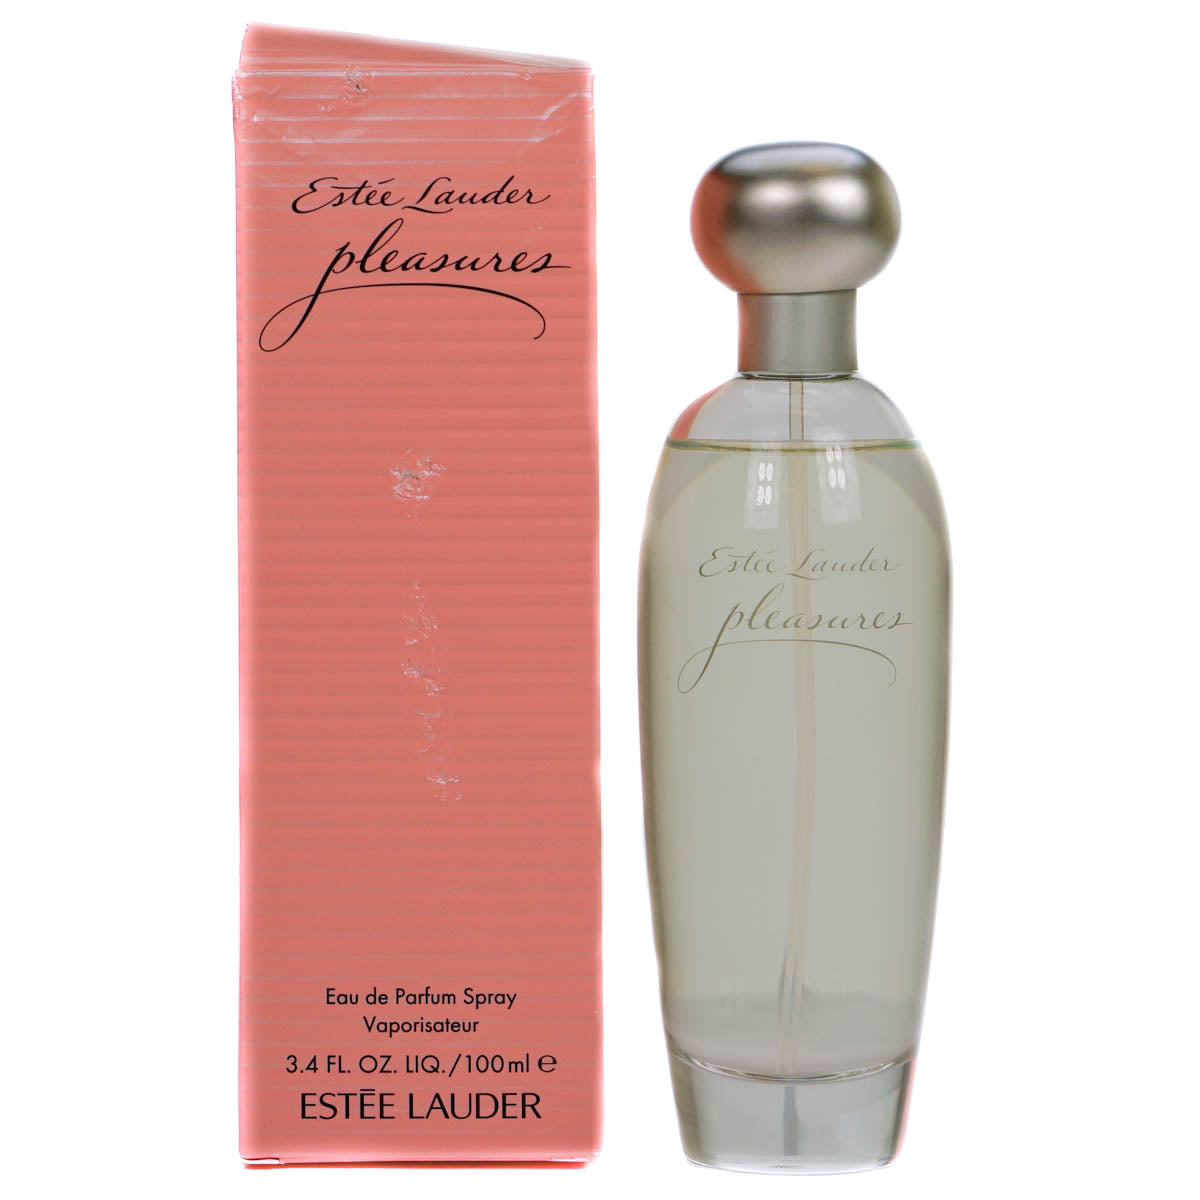 Estee Lauder Pleasures 100ml Eau De Parfum (Blemished Box)